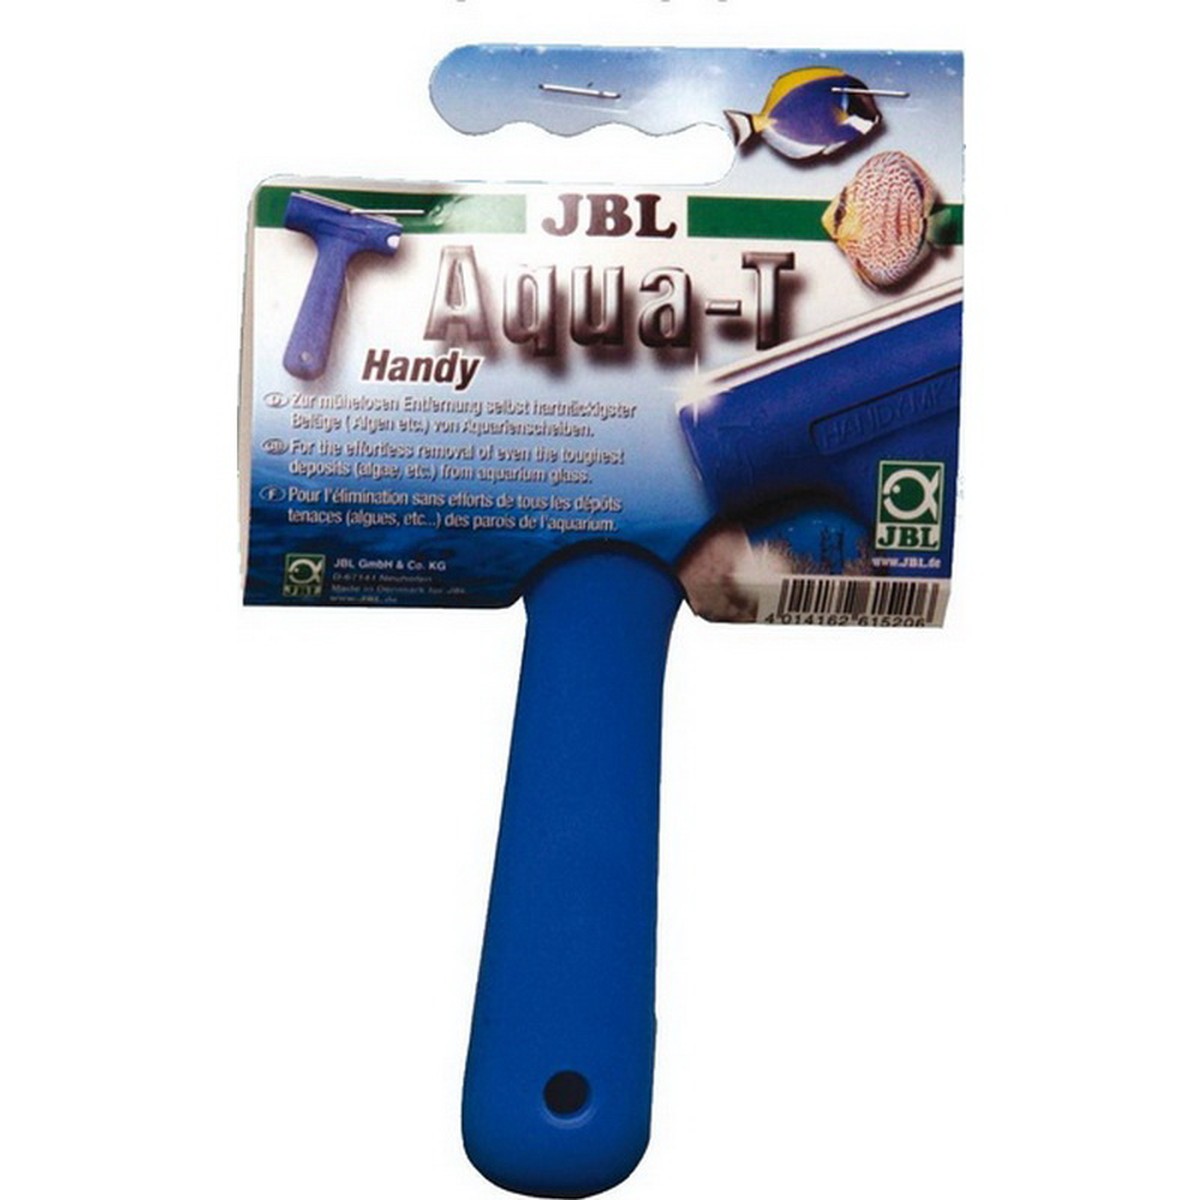   JBL Aqua-T Handy D/GB/F/NL  